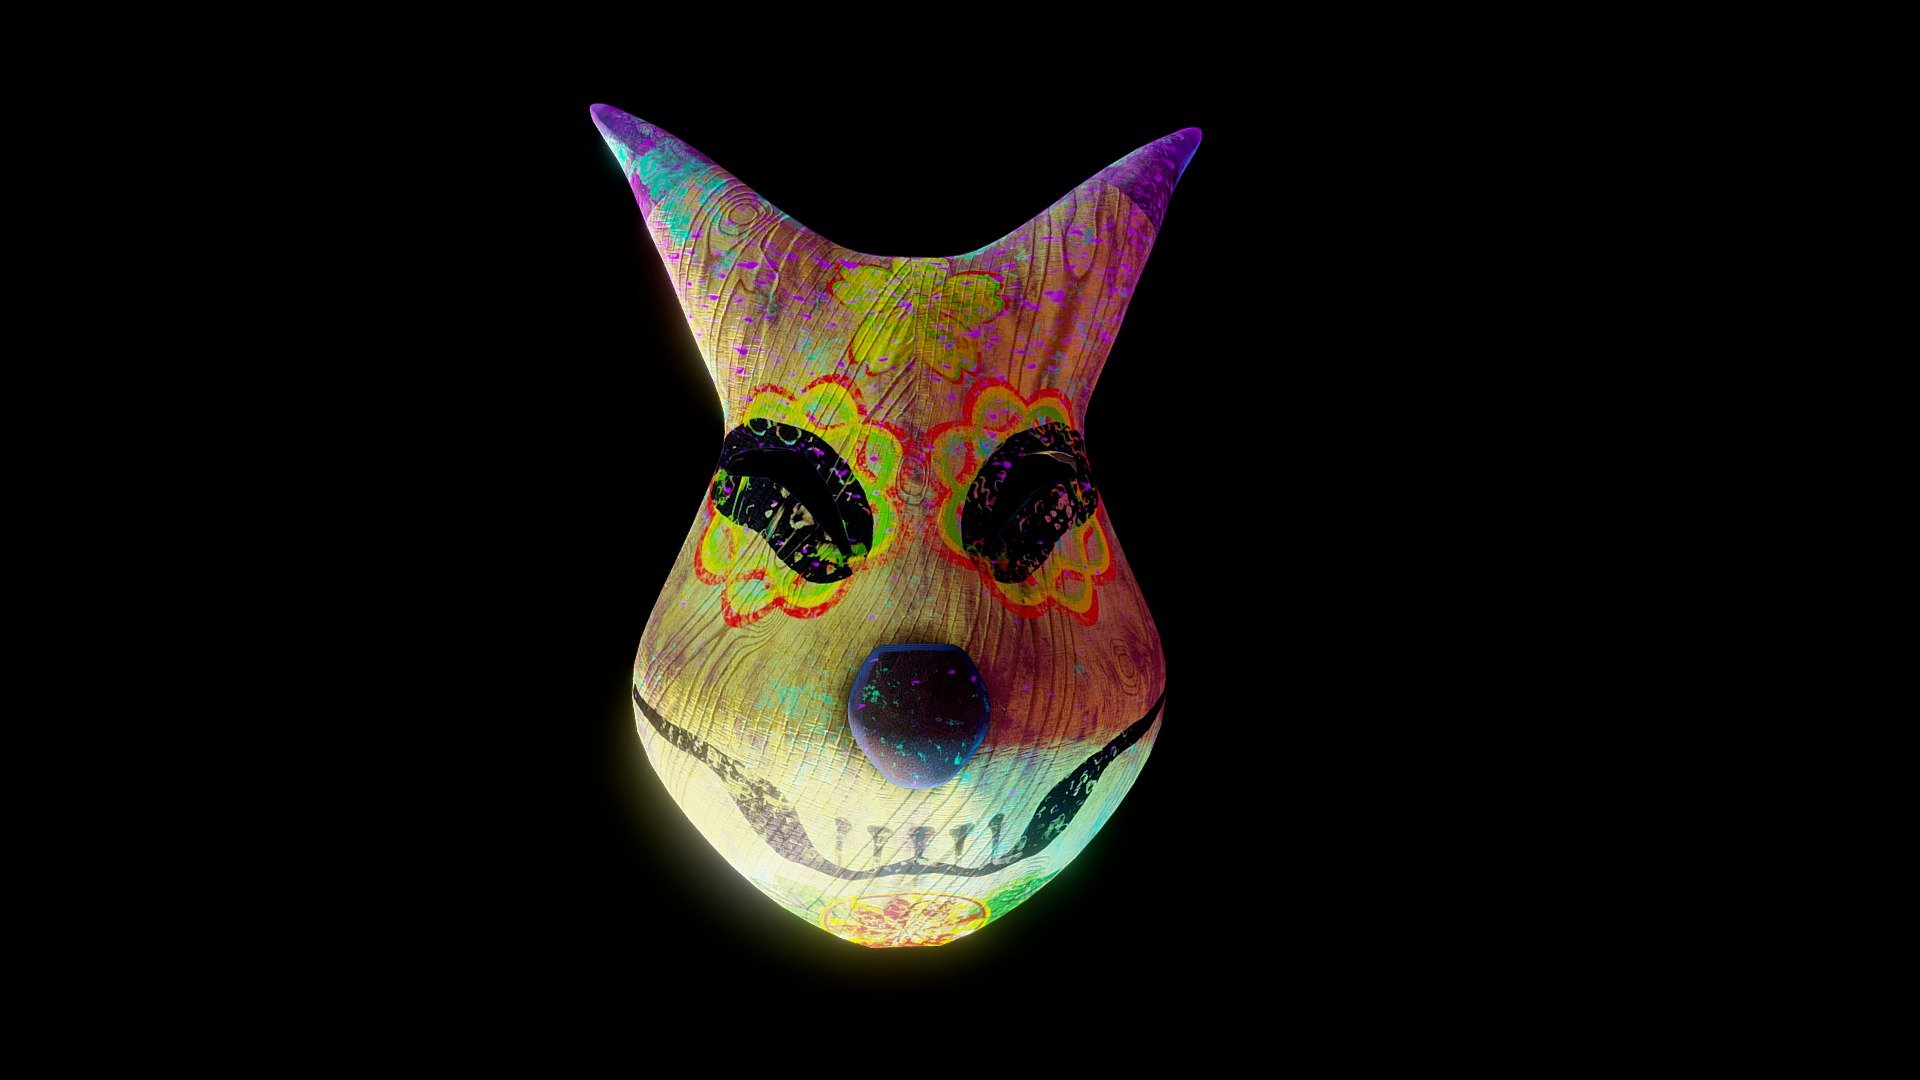 Keaton Majora's Mask catrina version